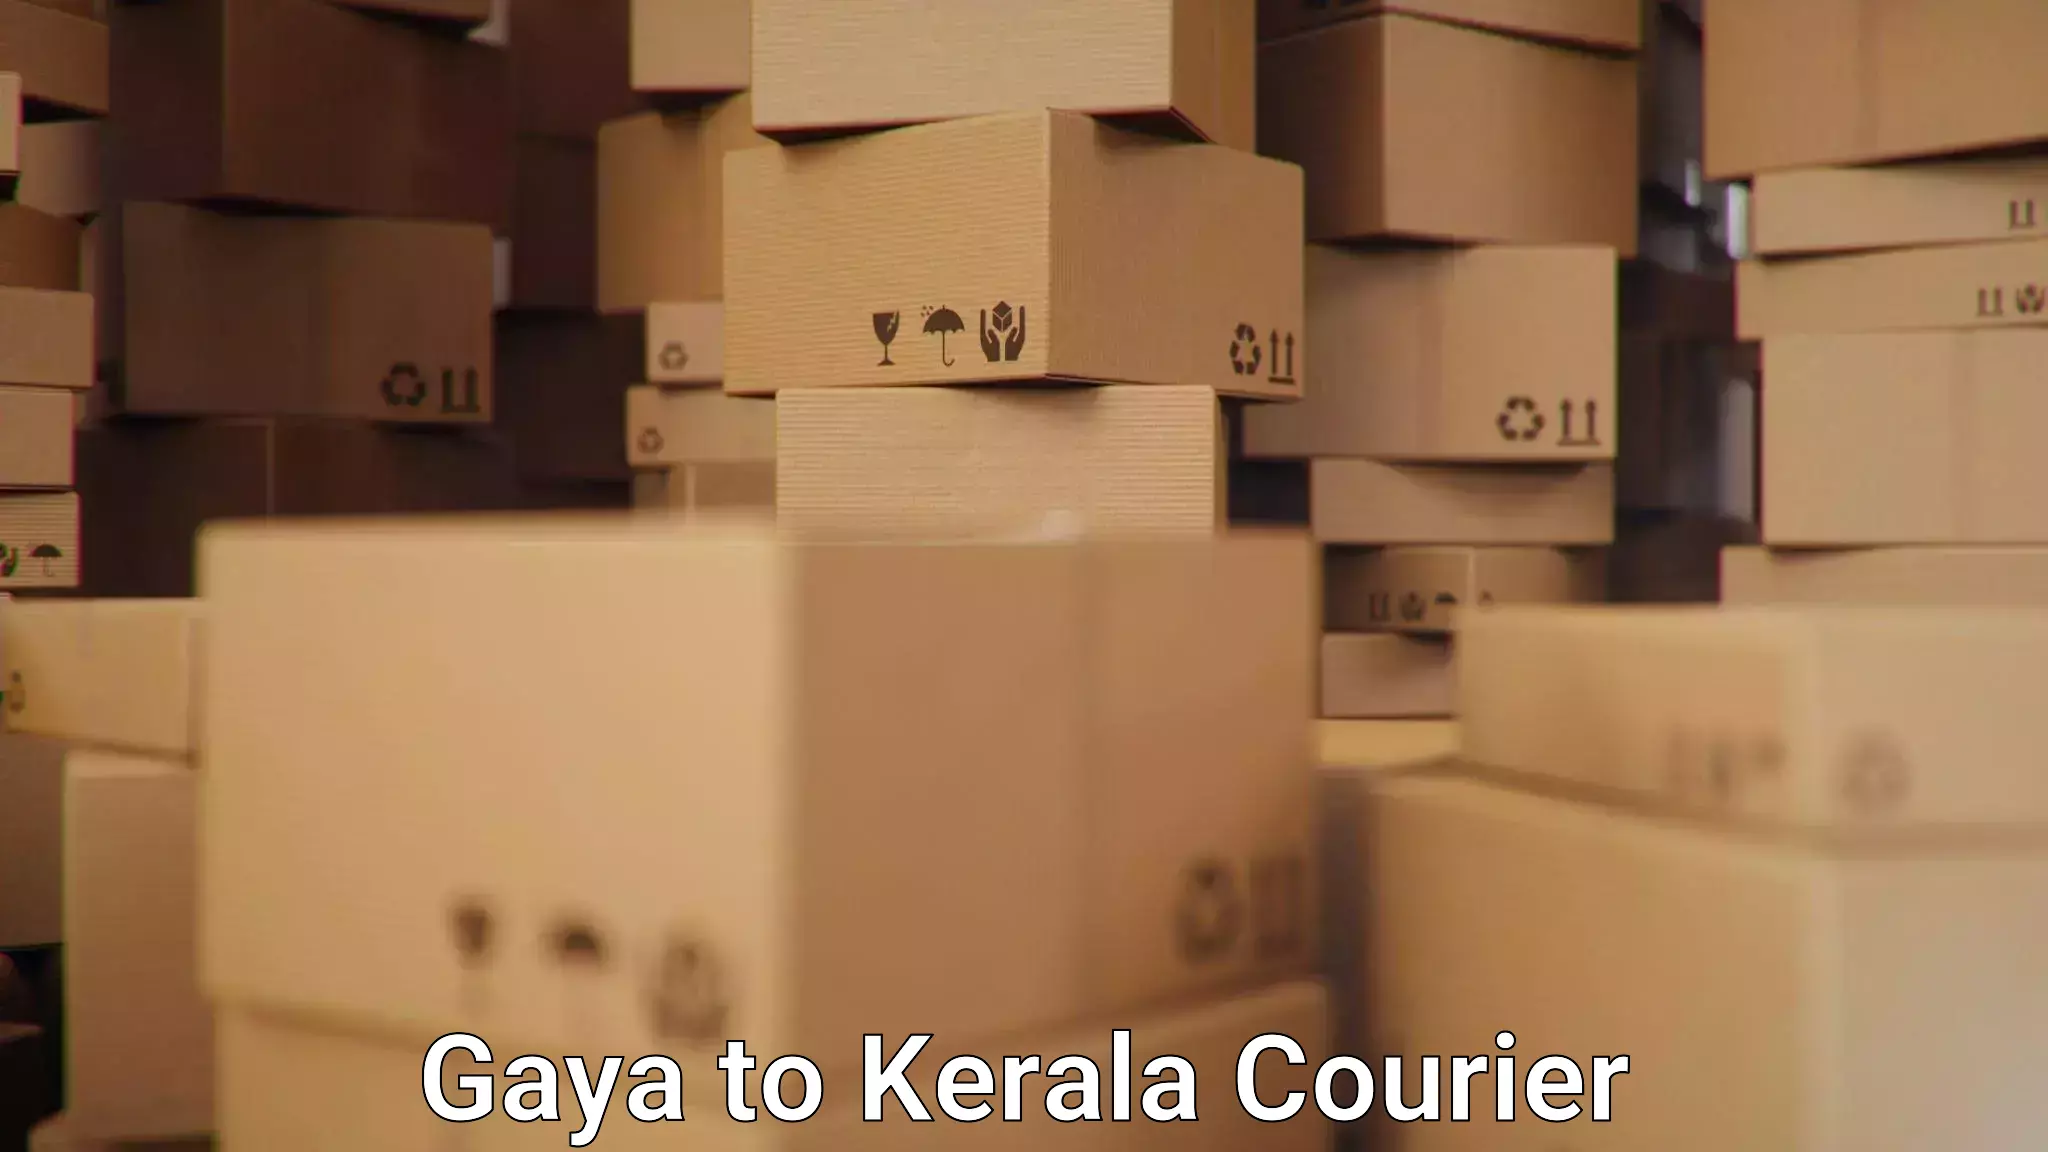 24/7 shipping services Gaya to Kerala